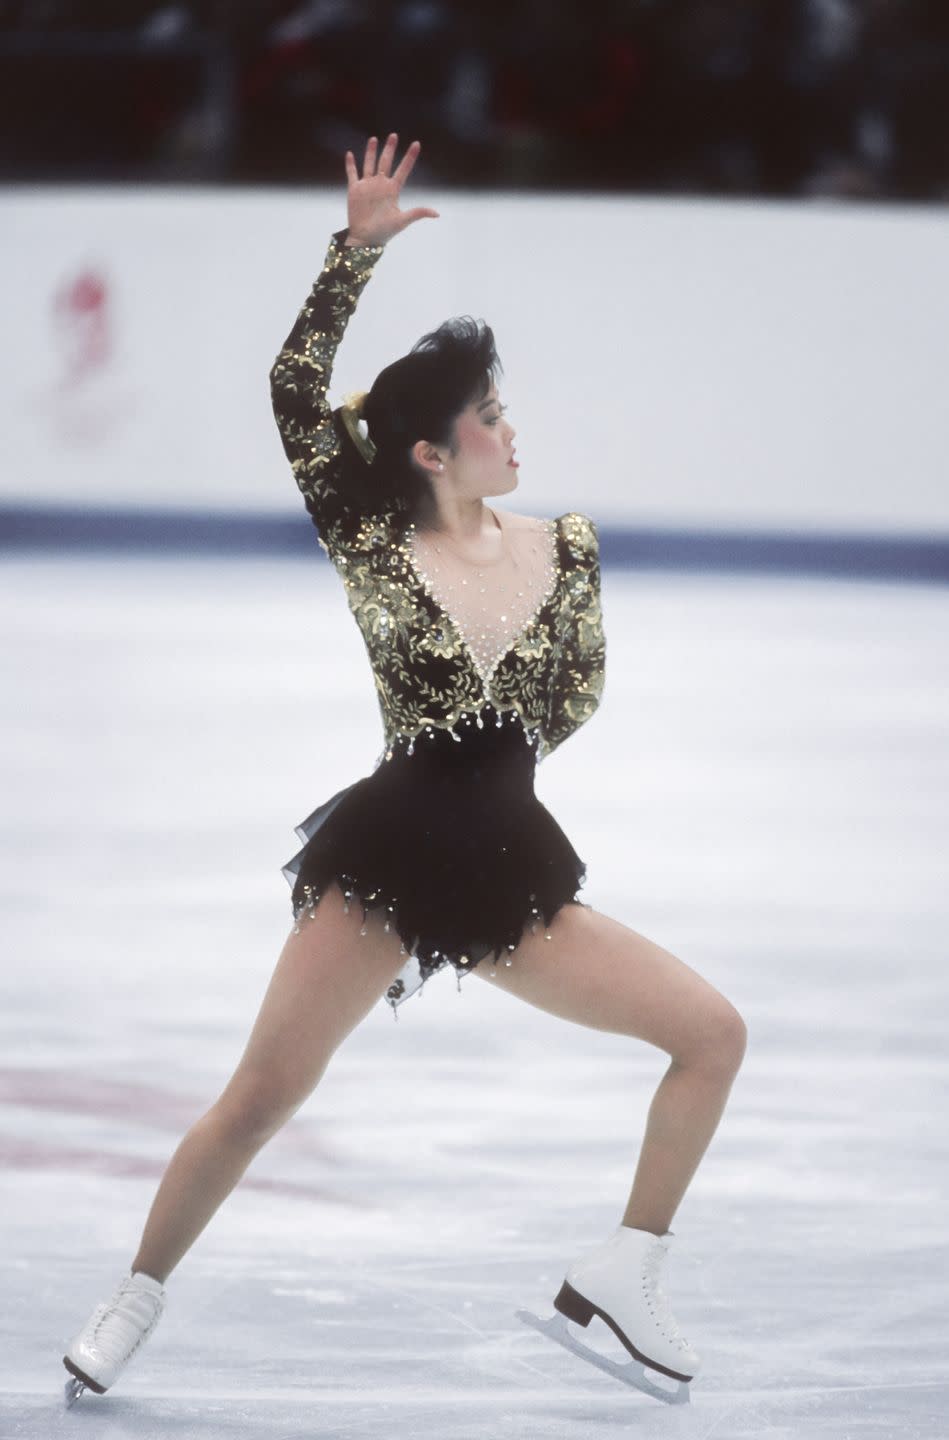 1992: Kristi Yamaguchi